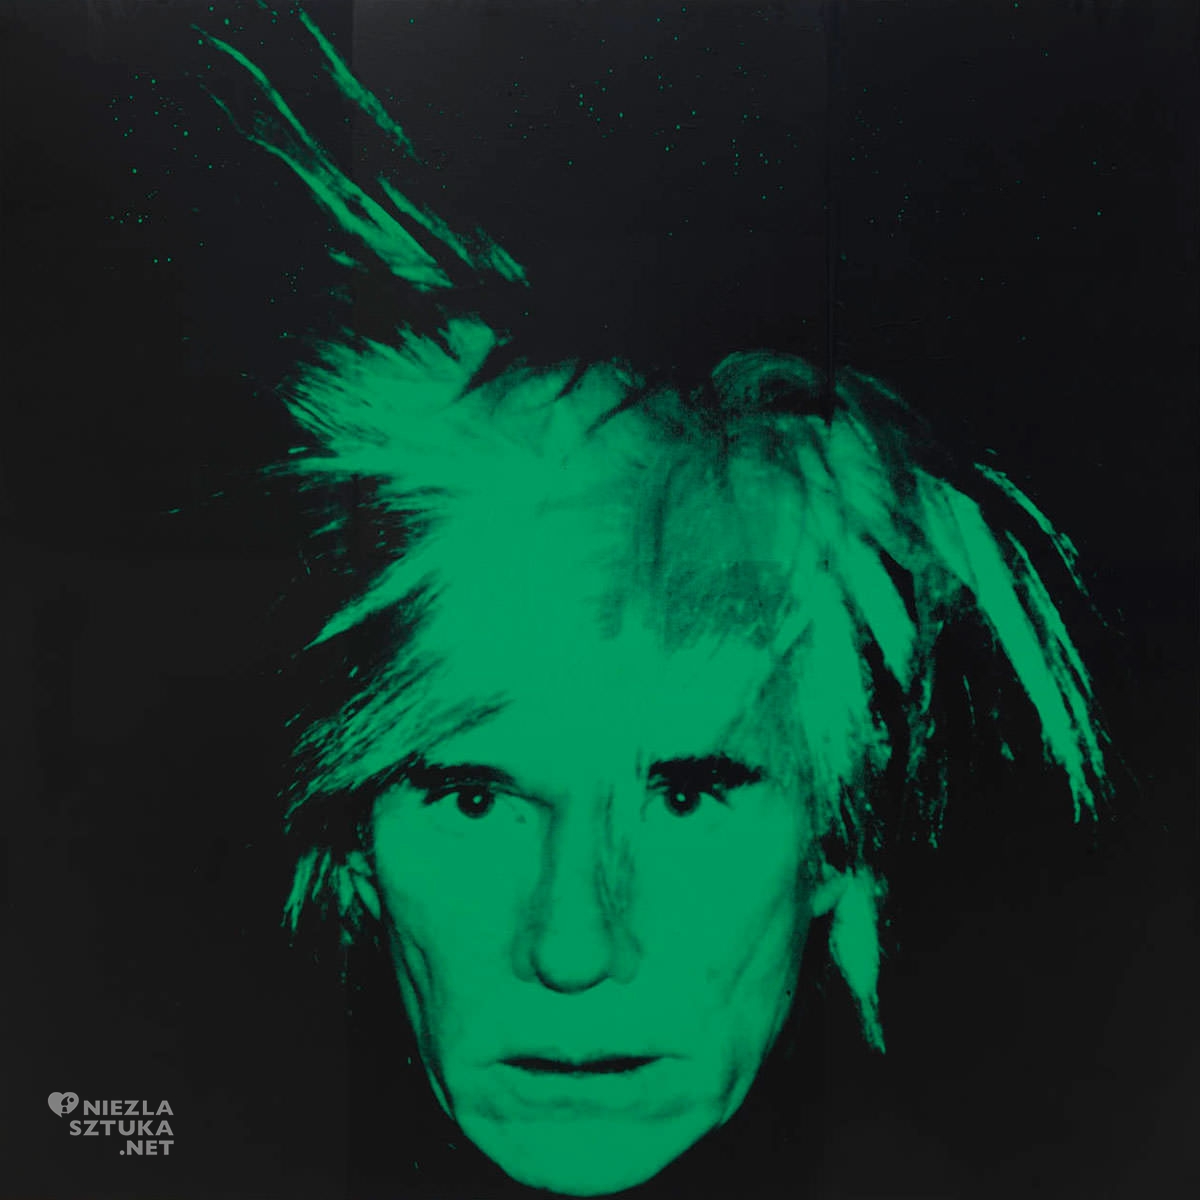 Andy Warhol, Autoportret, pop-art, Niezła Sztuka